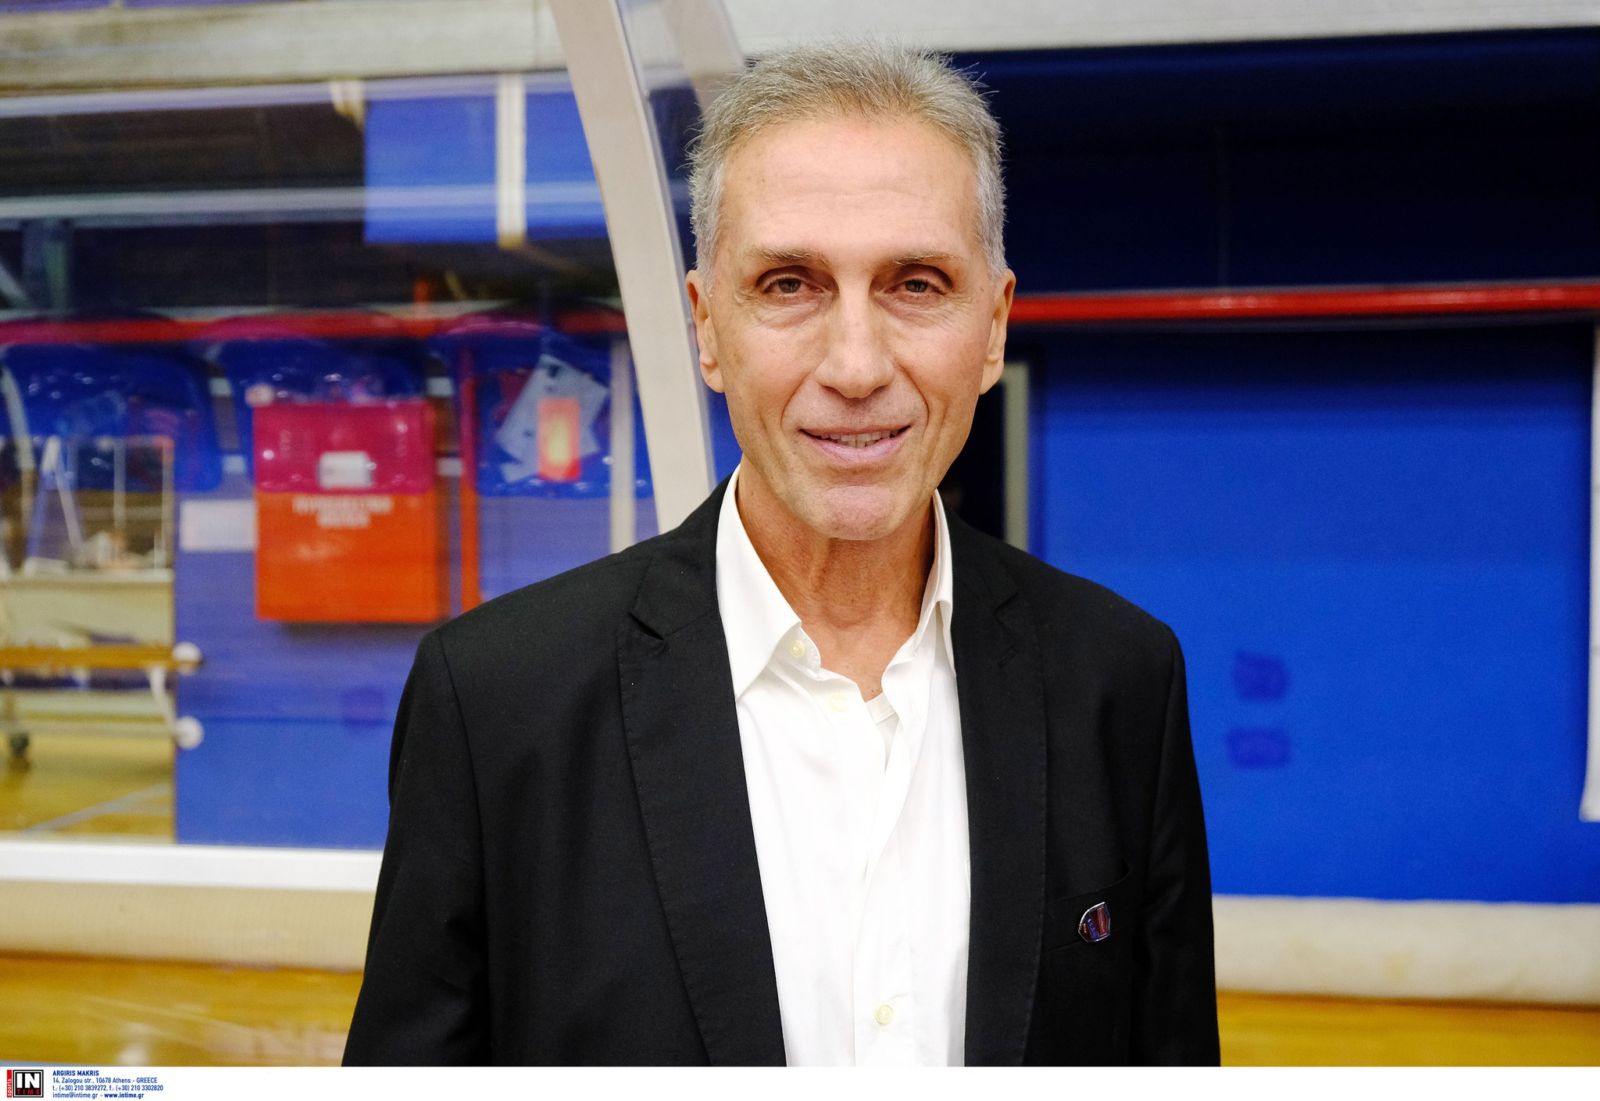 Ταυρόπουλος στο basketblog.gr: “Θέλω να κρατήσουμε τον χαρακτήρα μας, αντιμετωπίσαμε τον θεσμό με σεβάσμο”